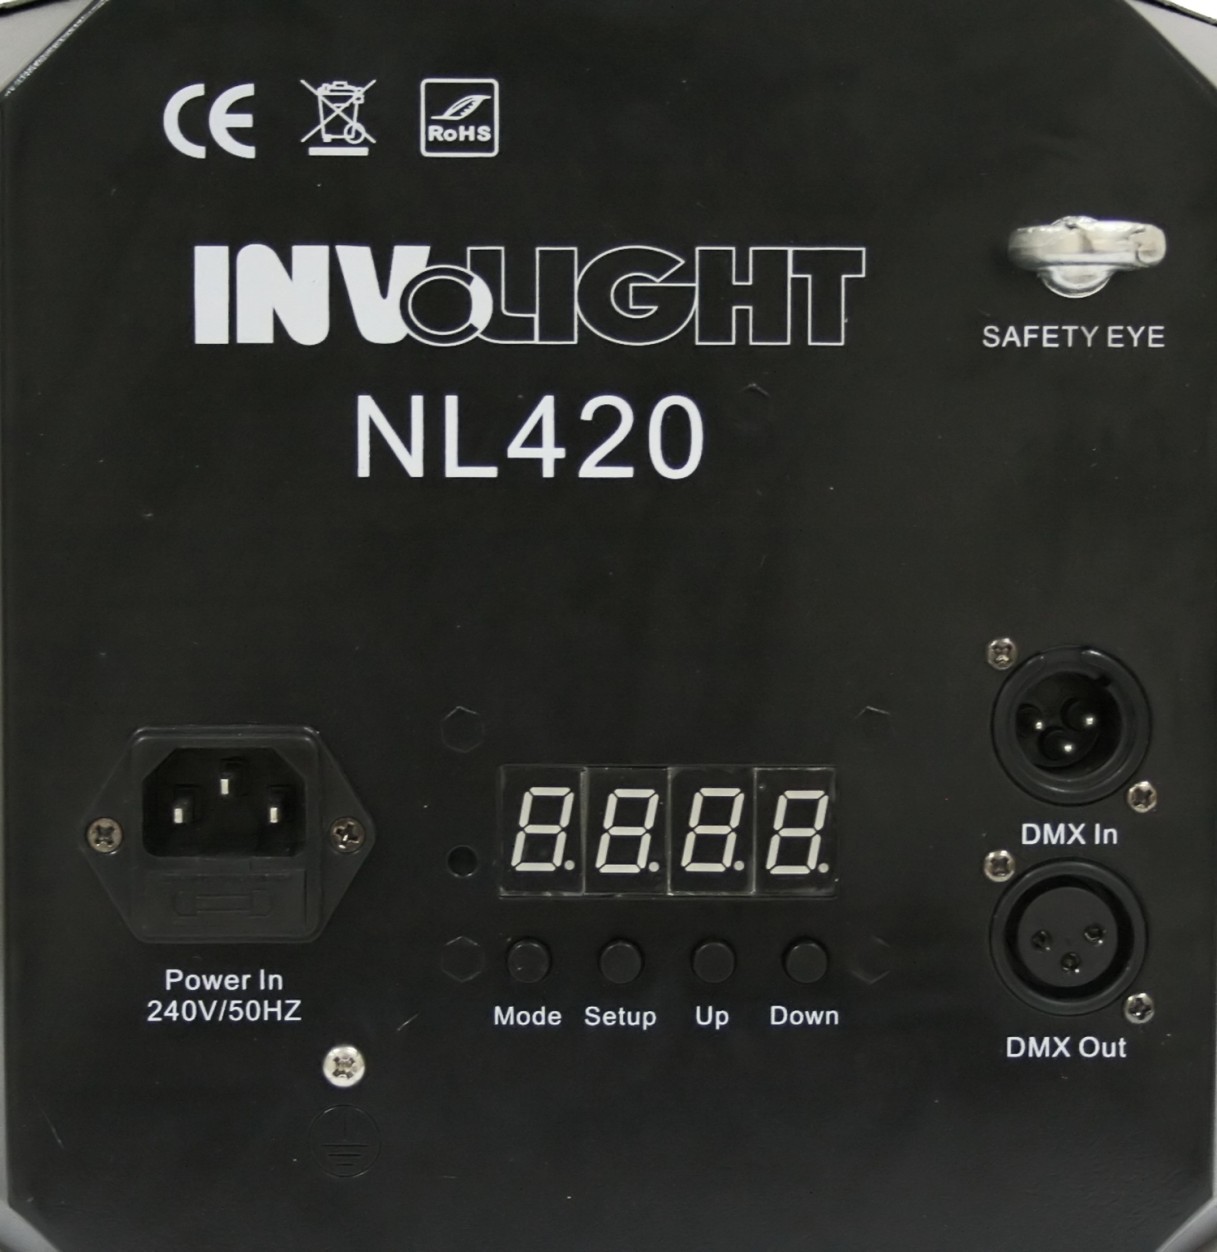 Involight NL420 LED световой эффект